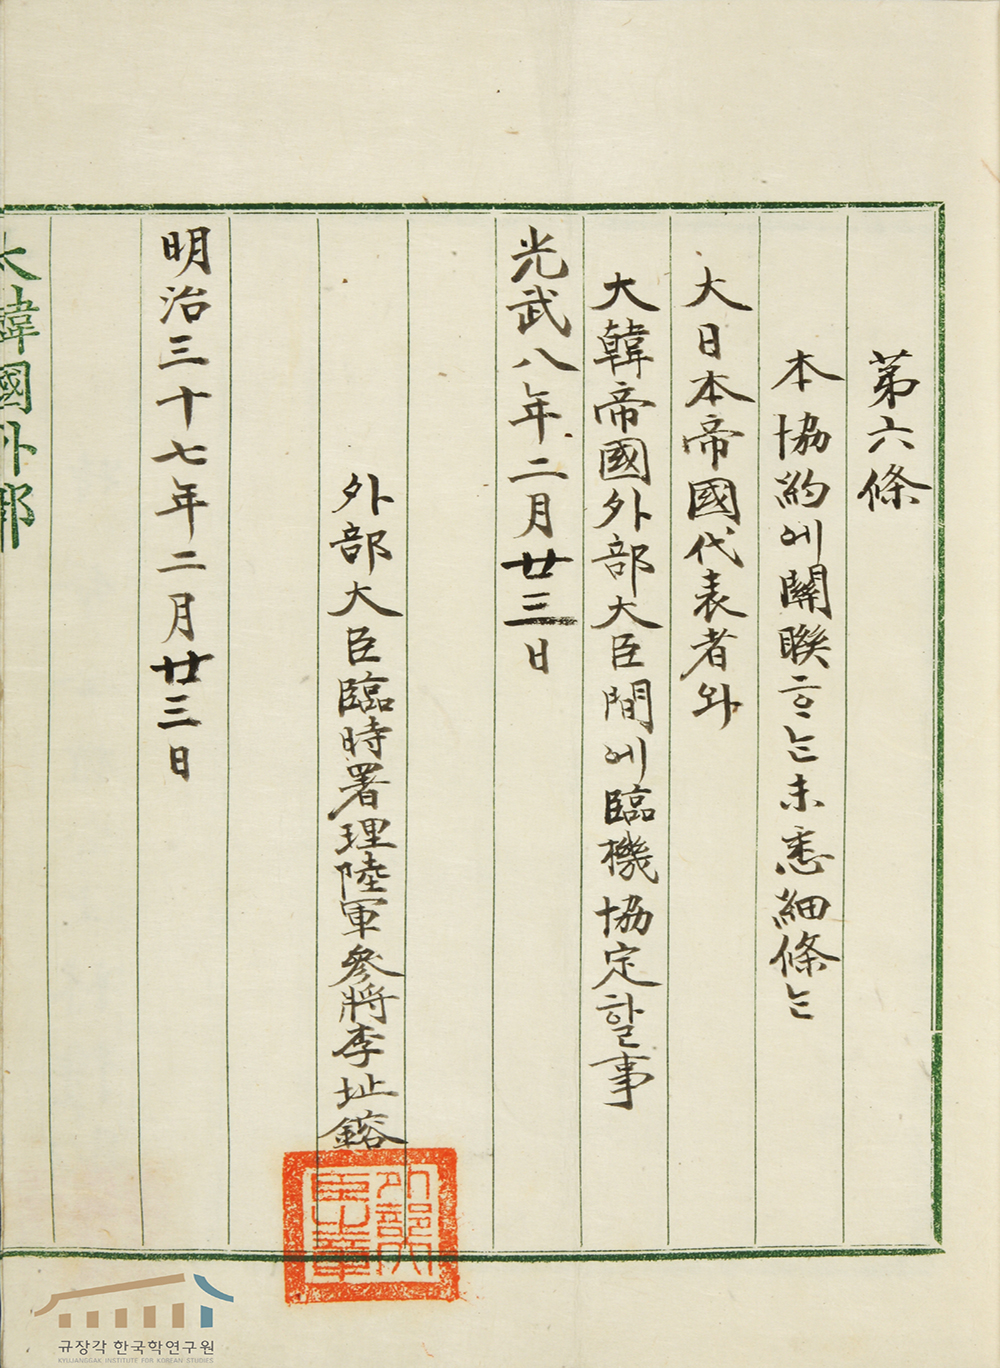 المعاهدة الكورية اليابانية للسنة 1904